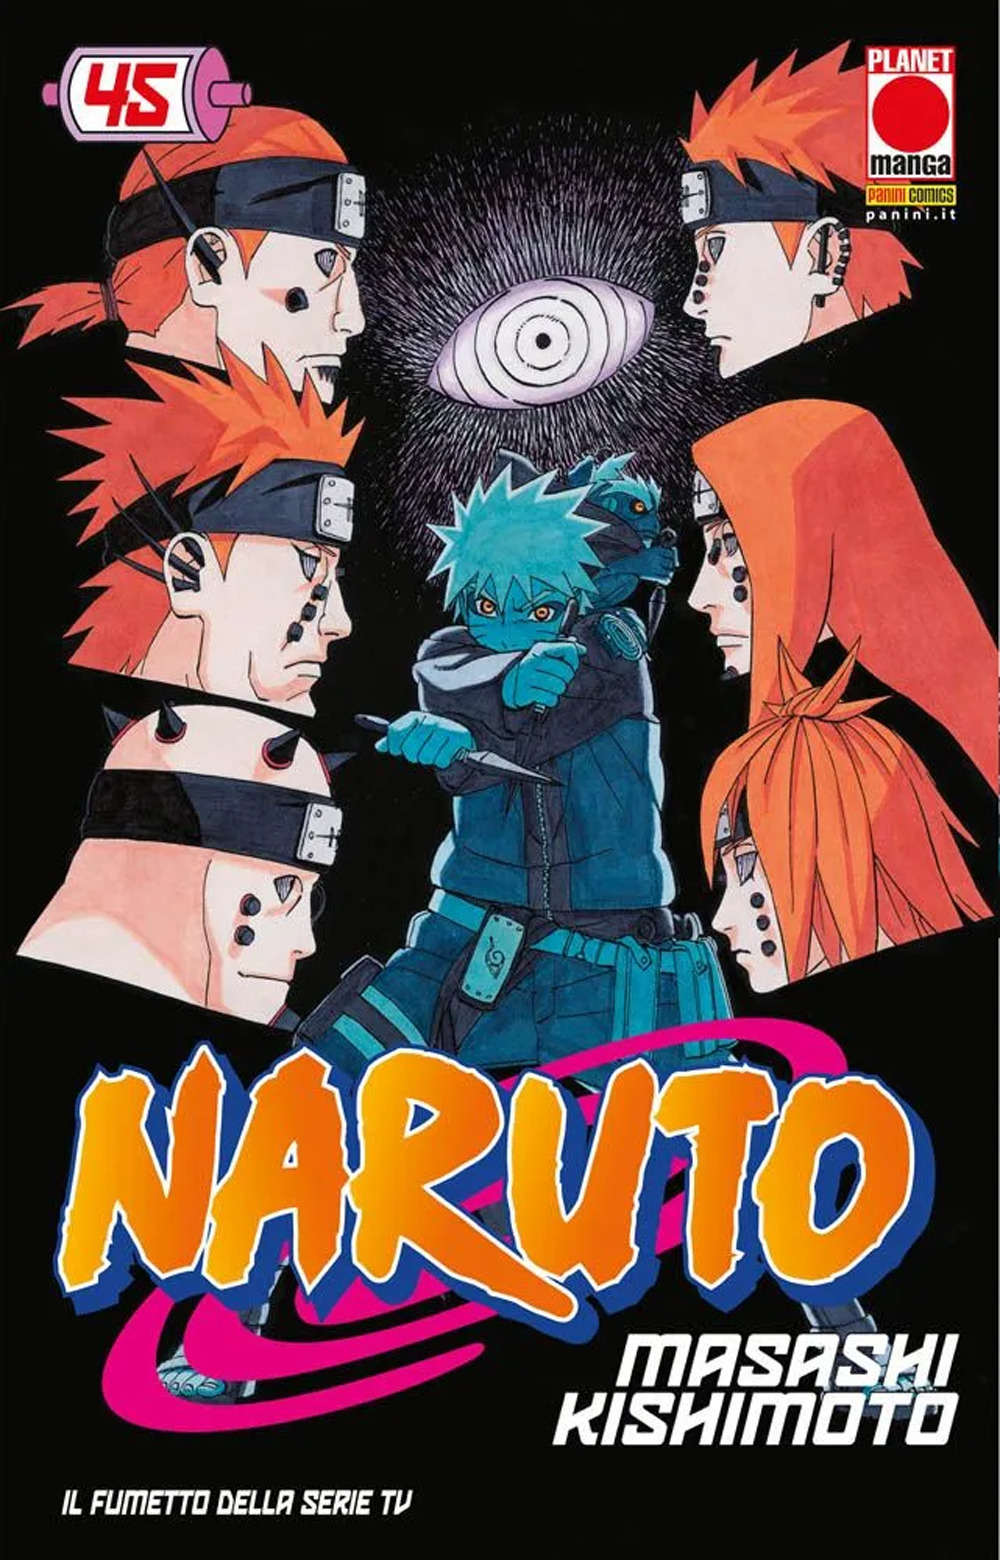 Naruto. Il mito. Vol. 45